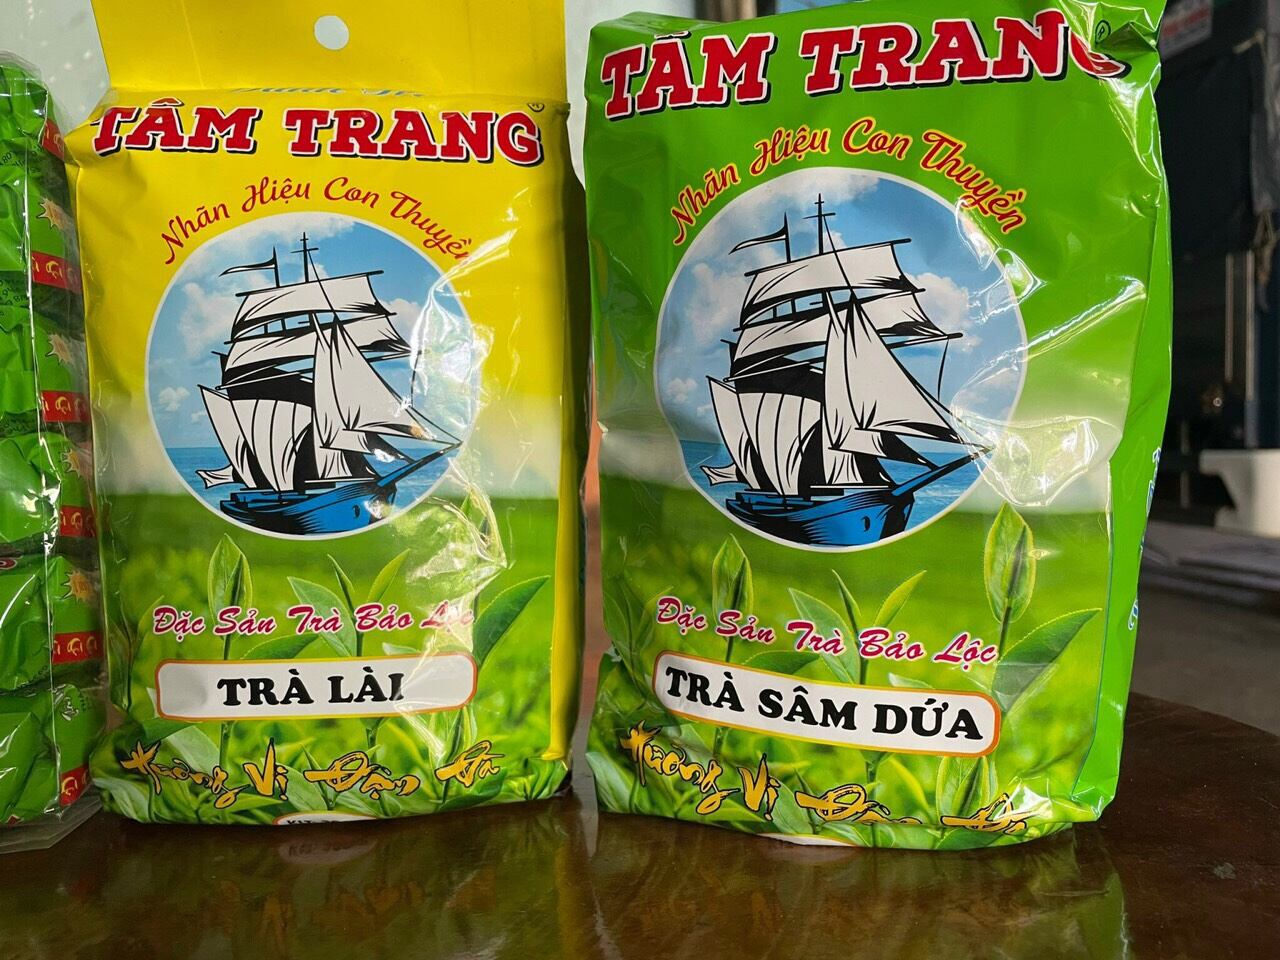 Danh trà Tâm Trang